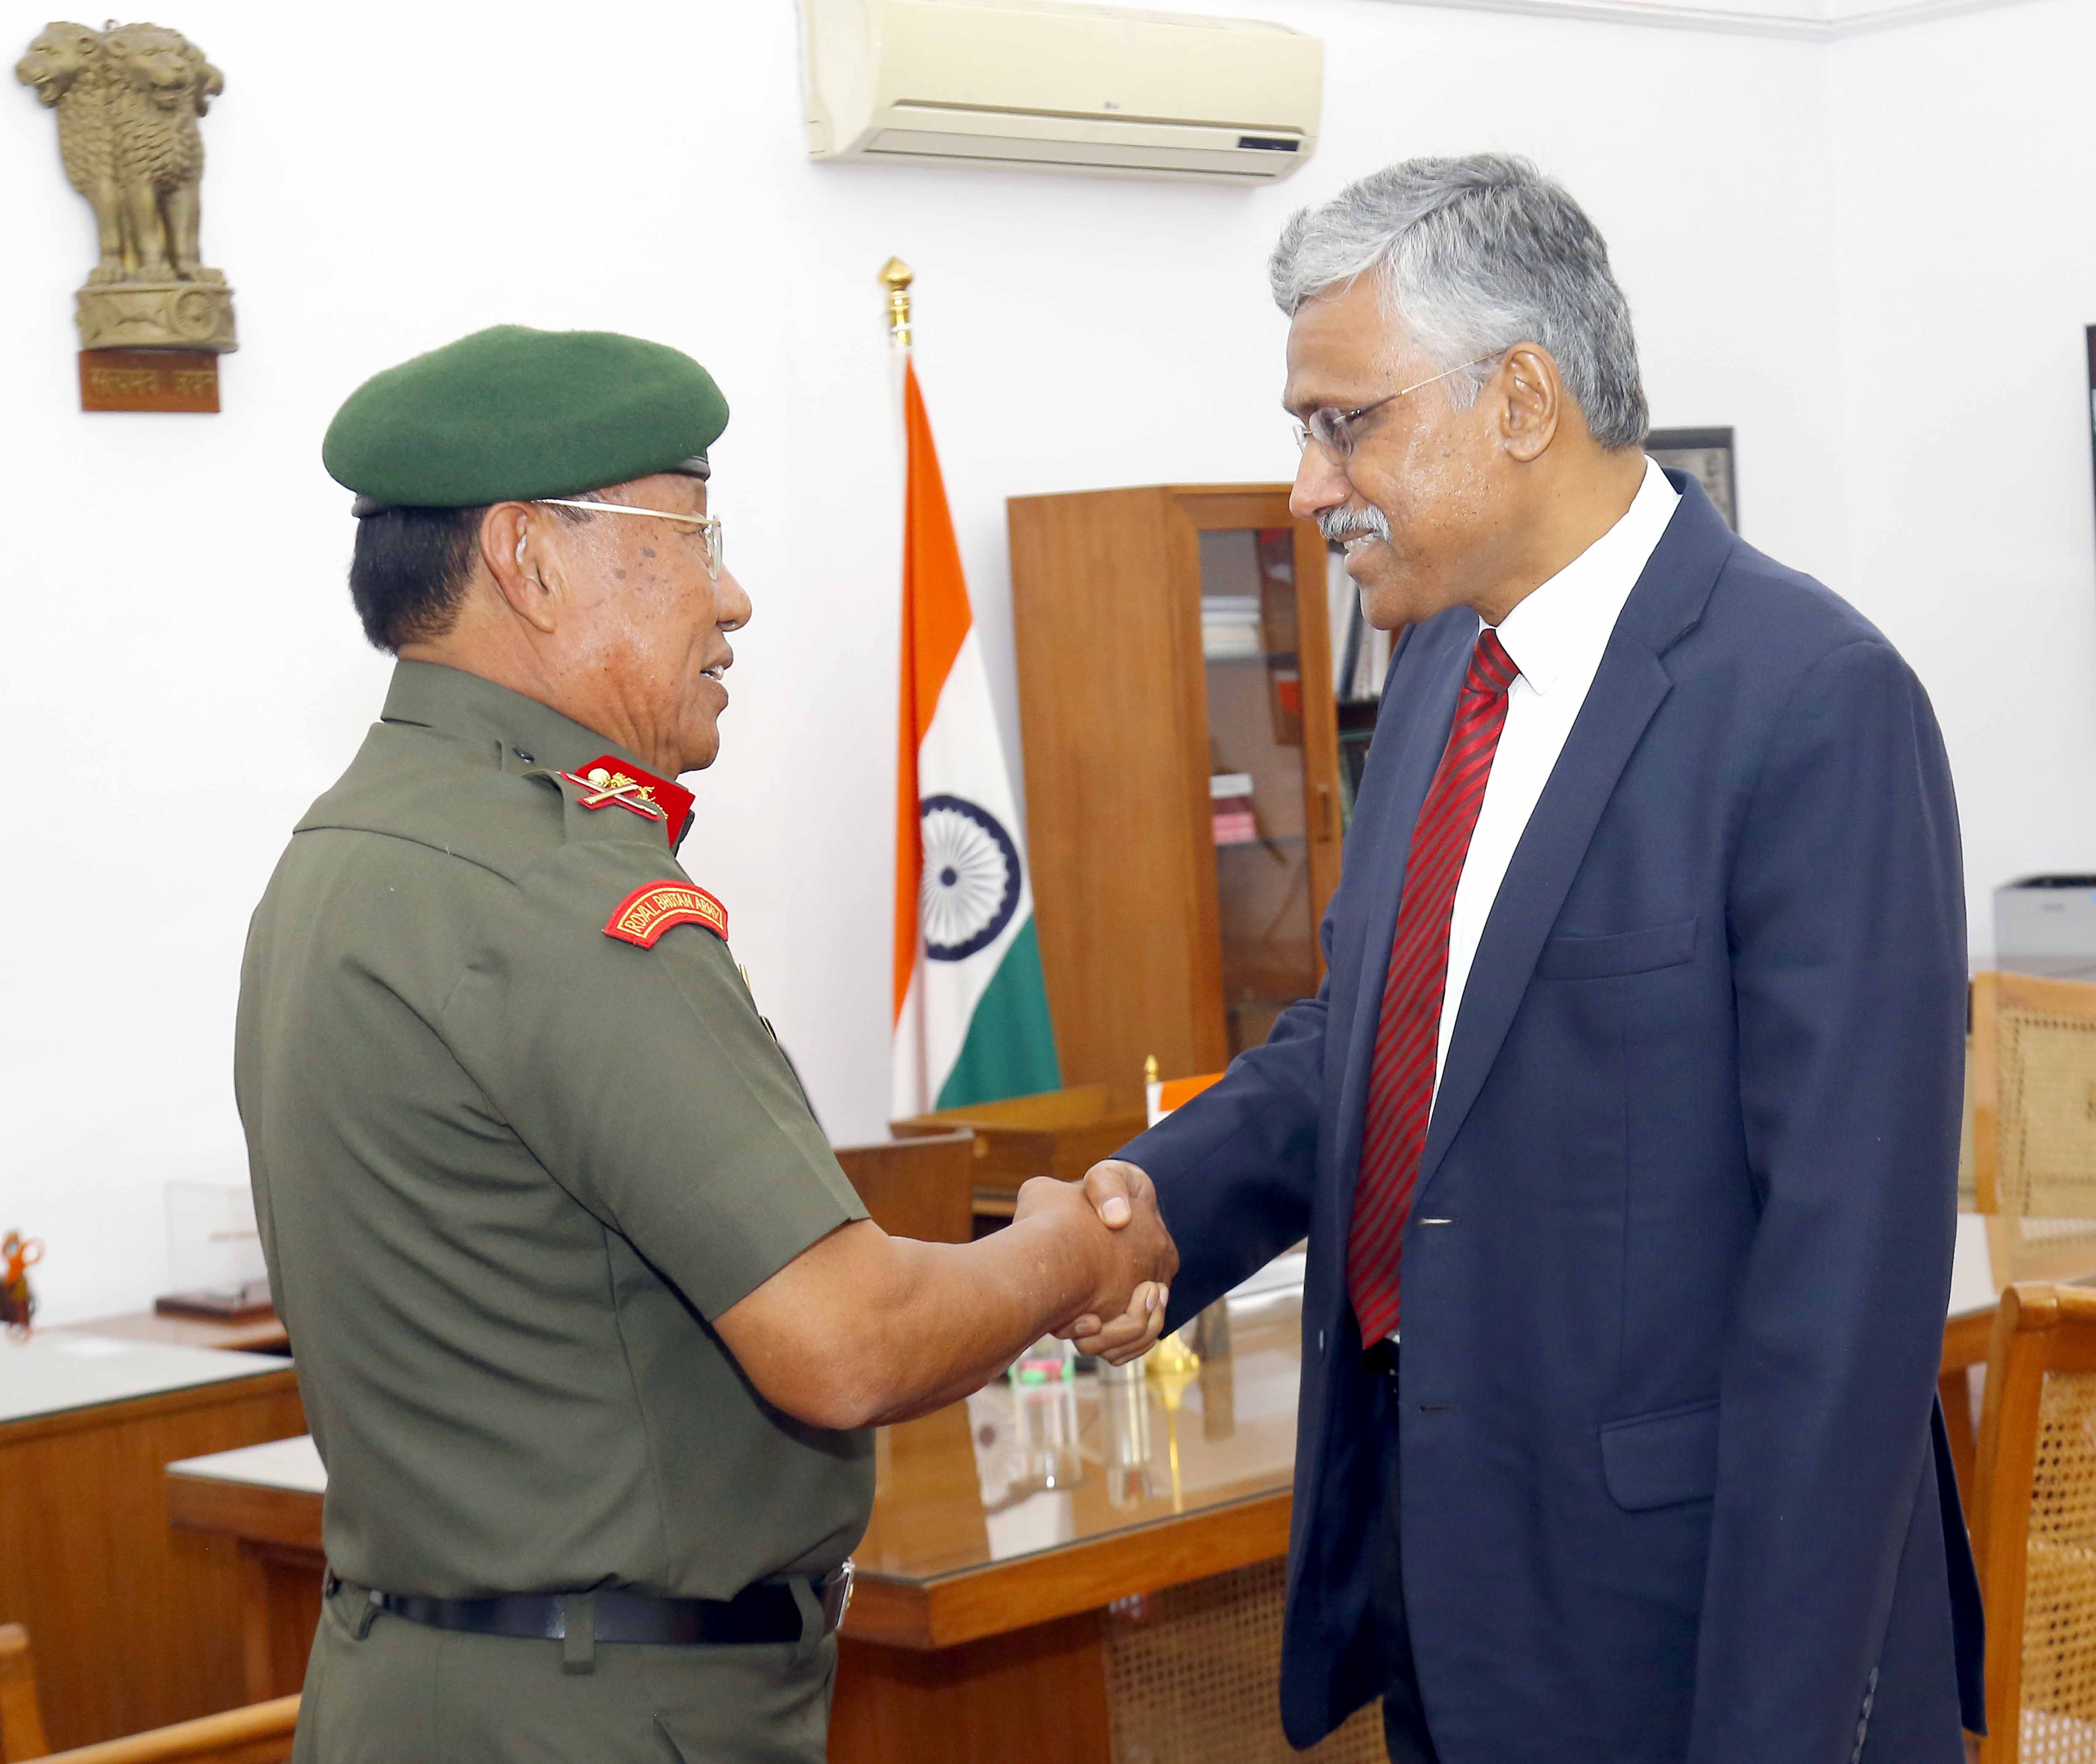 रॉयल भूटान आर्मी के चीफ ऑपरेशन्स ऑफिसर लेफ्टिनेंट जनरल बैटू शेरिंग 01 नवंबर 2022 को नई दिल्ली में रक्षा सचिव श्री गिरिधर अरमने से भेंटवार्ता करते हुए।